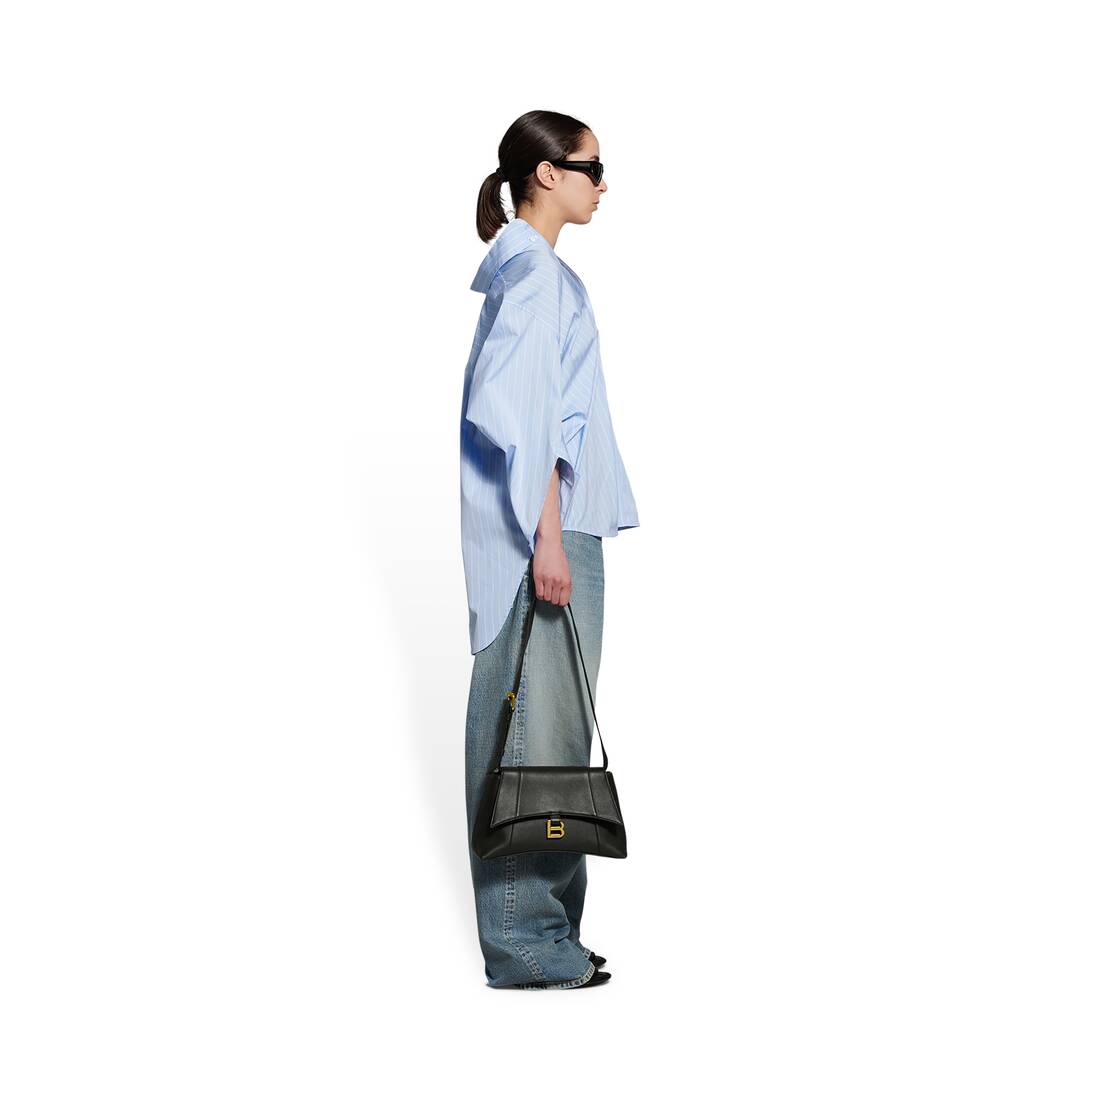 Balenciaga Crossbody Bags for Women